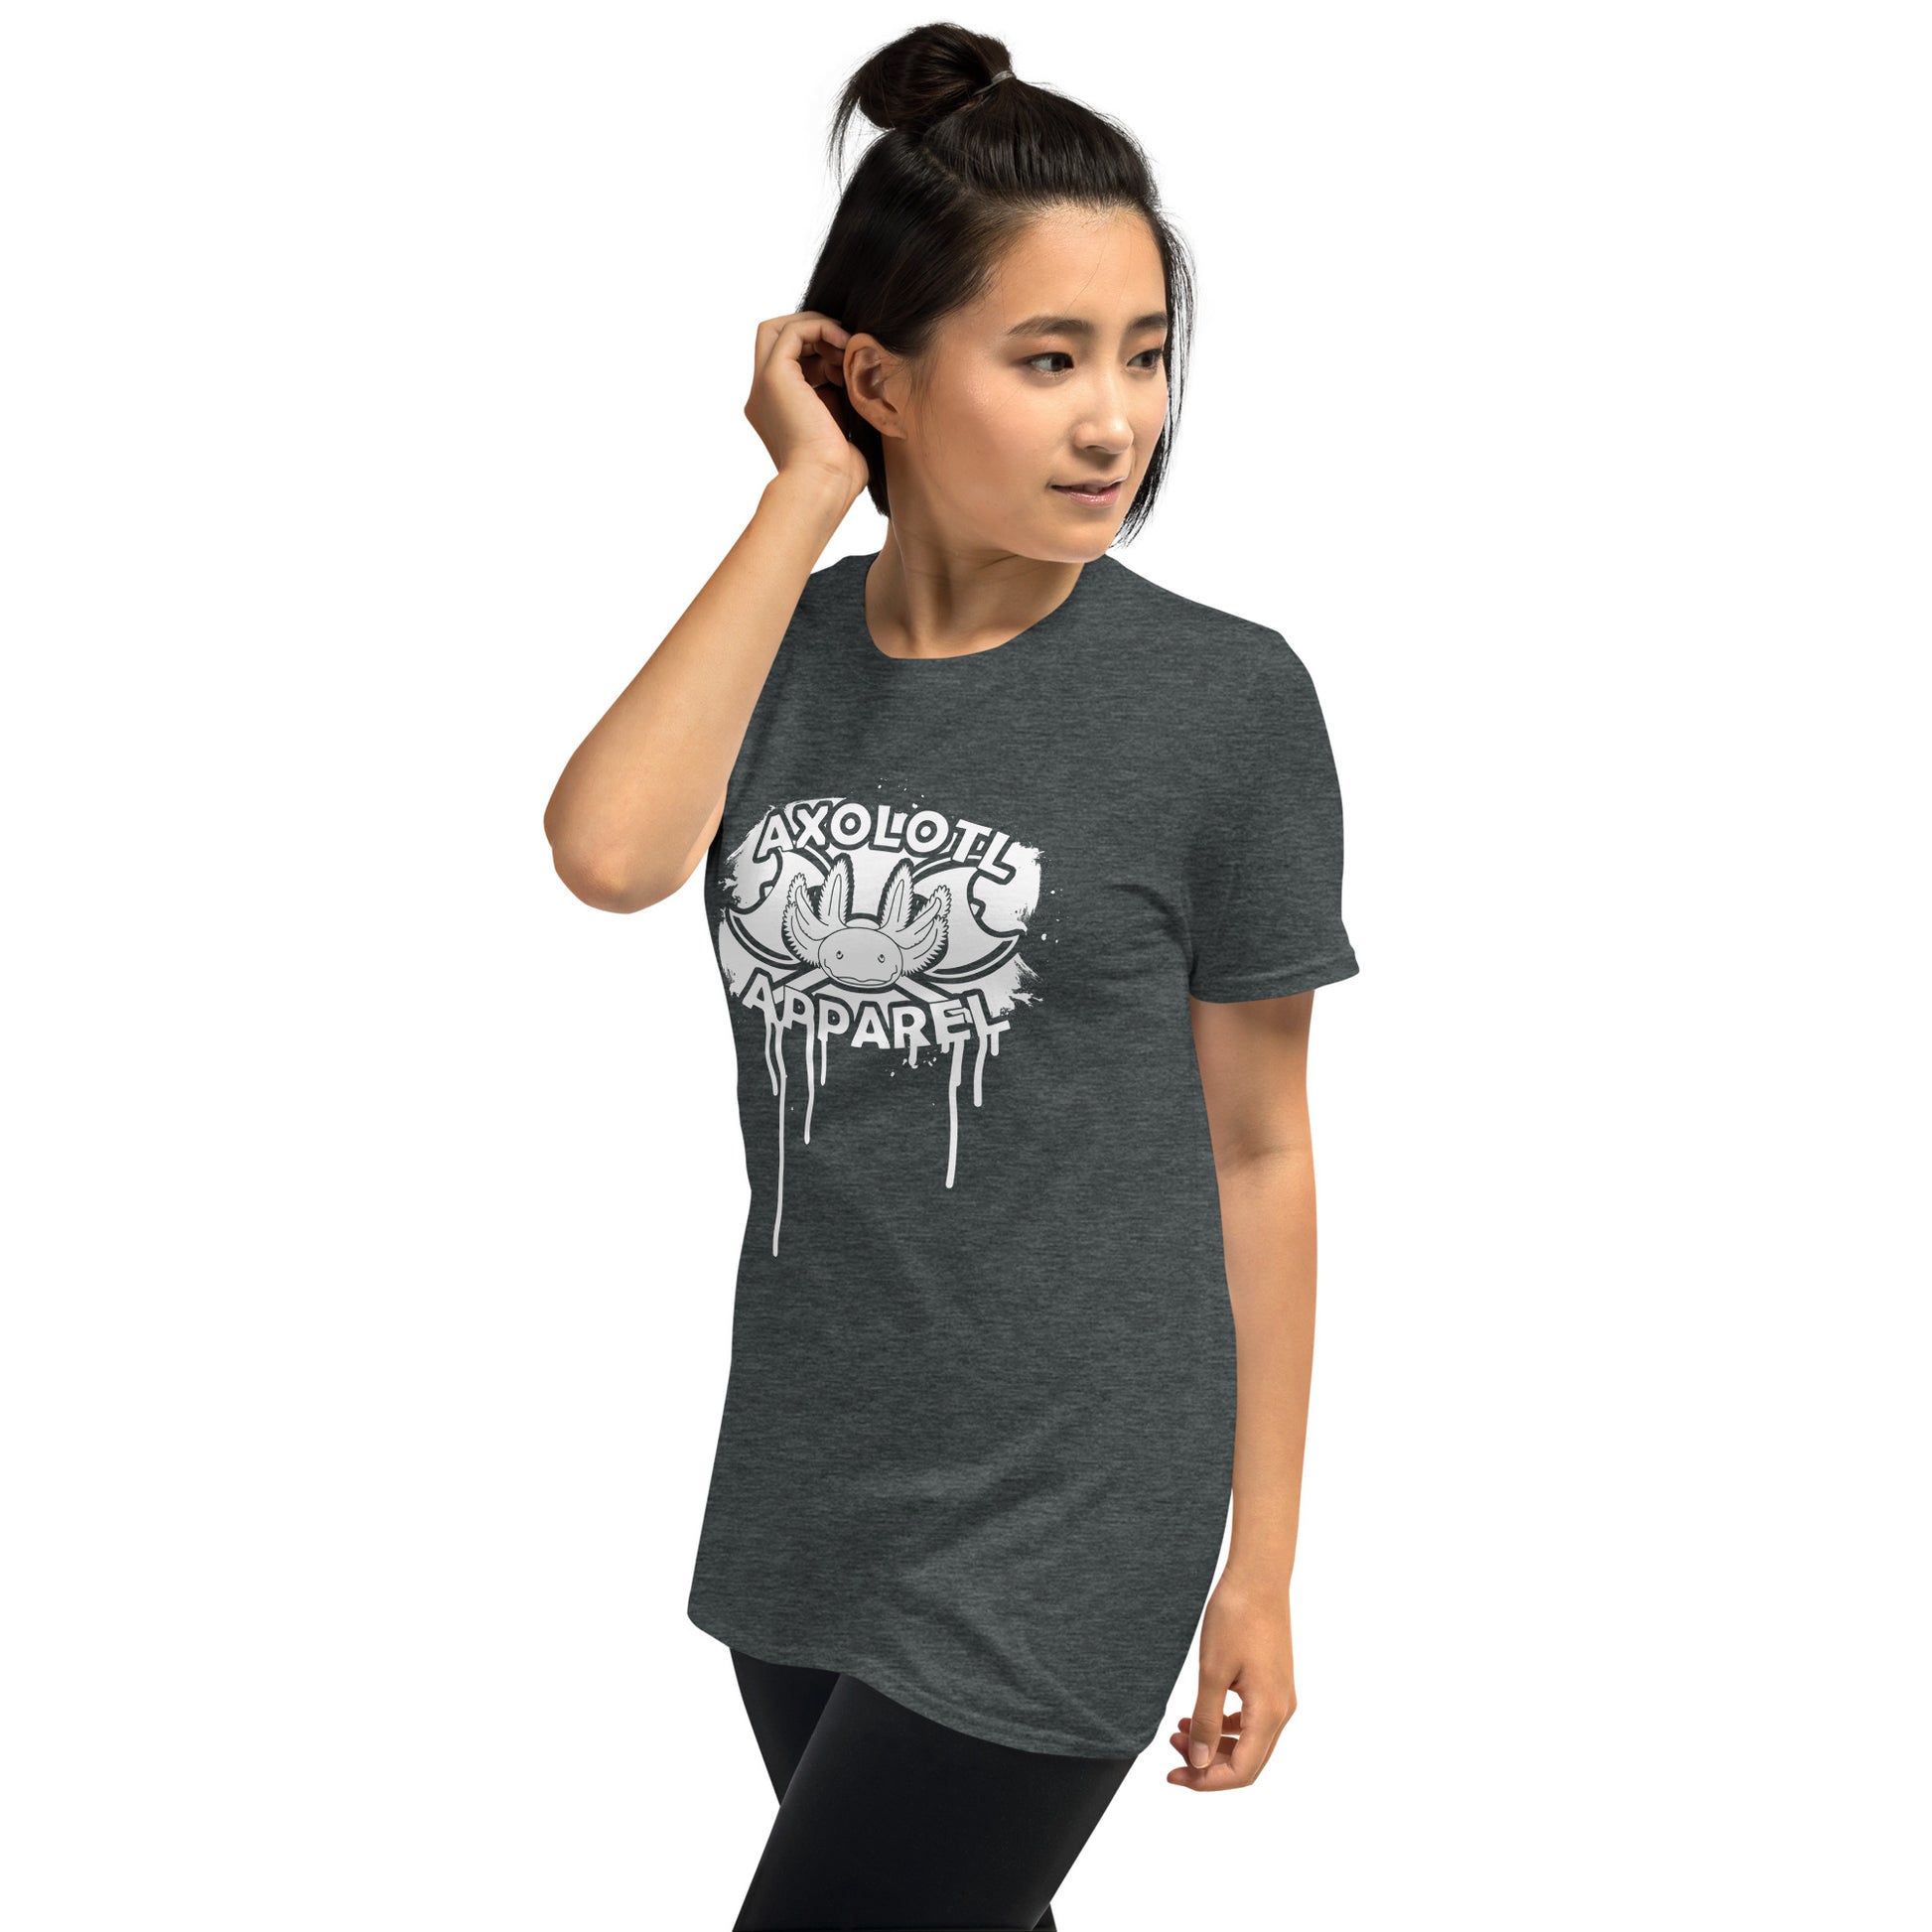 Axolotl-apparel-spatter-logo_Short-sleeve_Unisex_T-shirt_Grey_Mockup